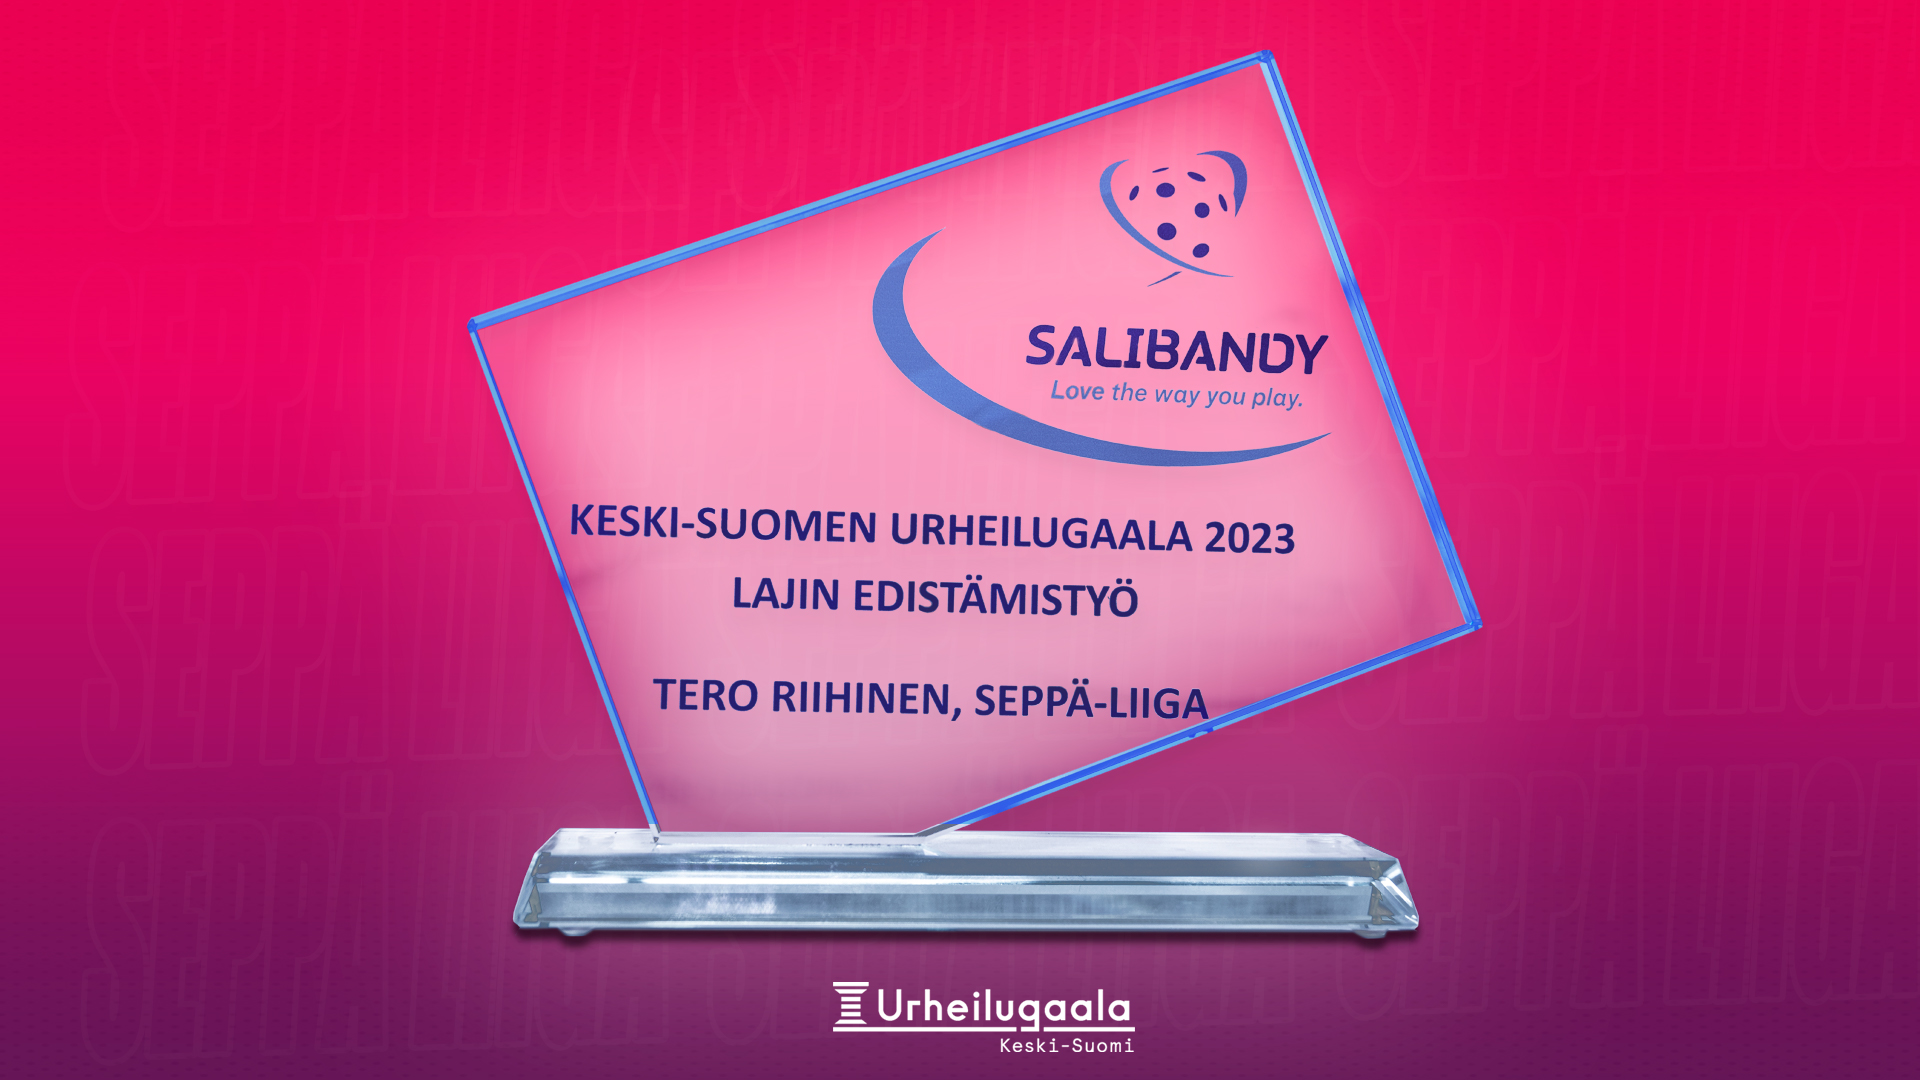 Keski-Suomen Urheilugaala 2023